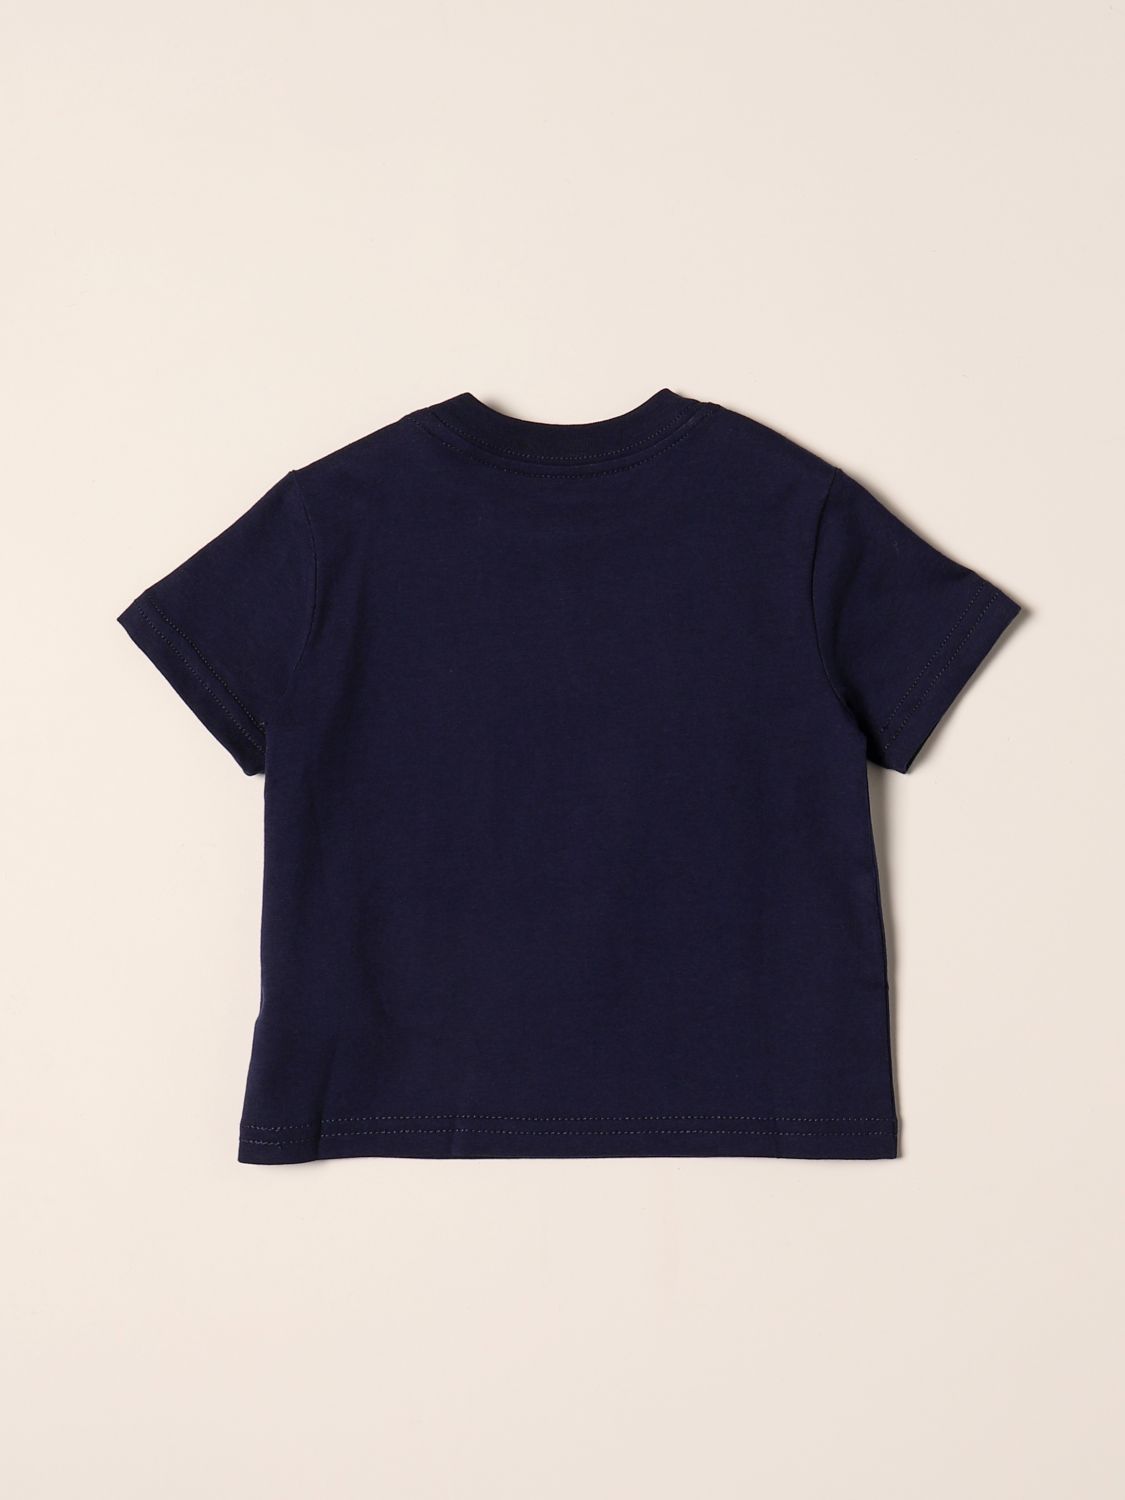 T-shirt Polo Ralph Lauren: T-shirt enfant Polo Ralph Lauren bleu marine 2